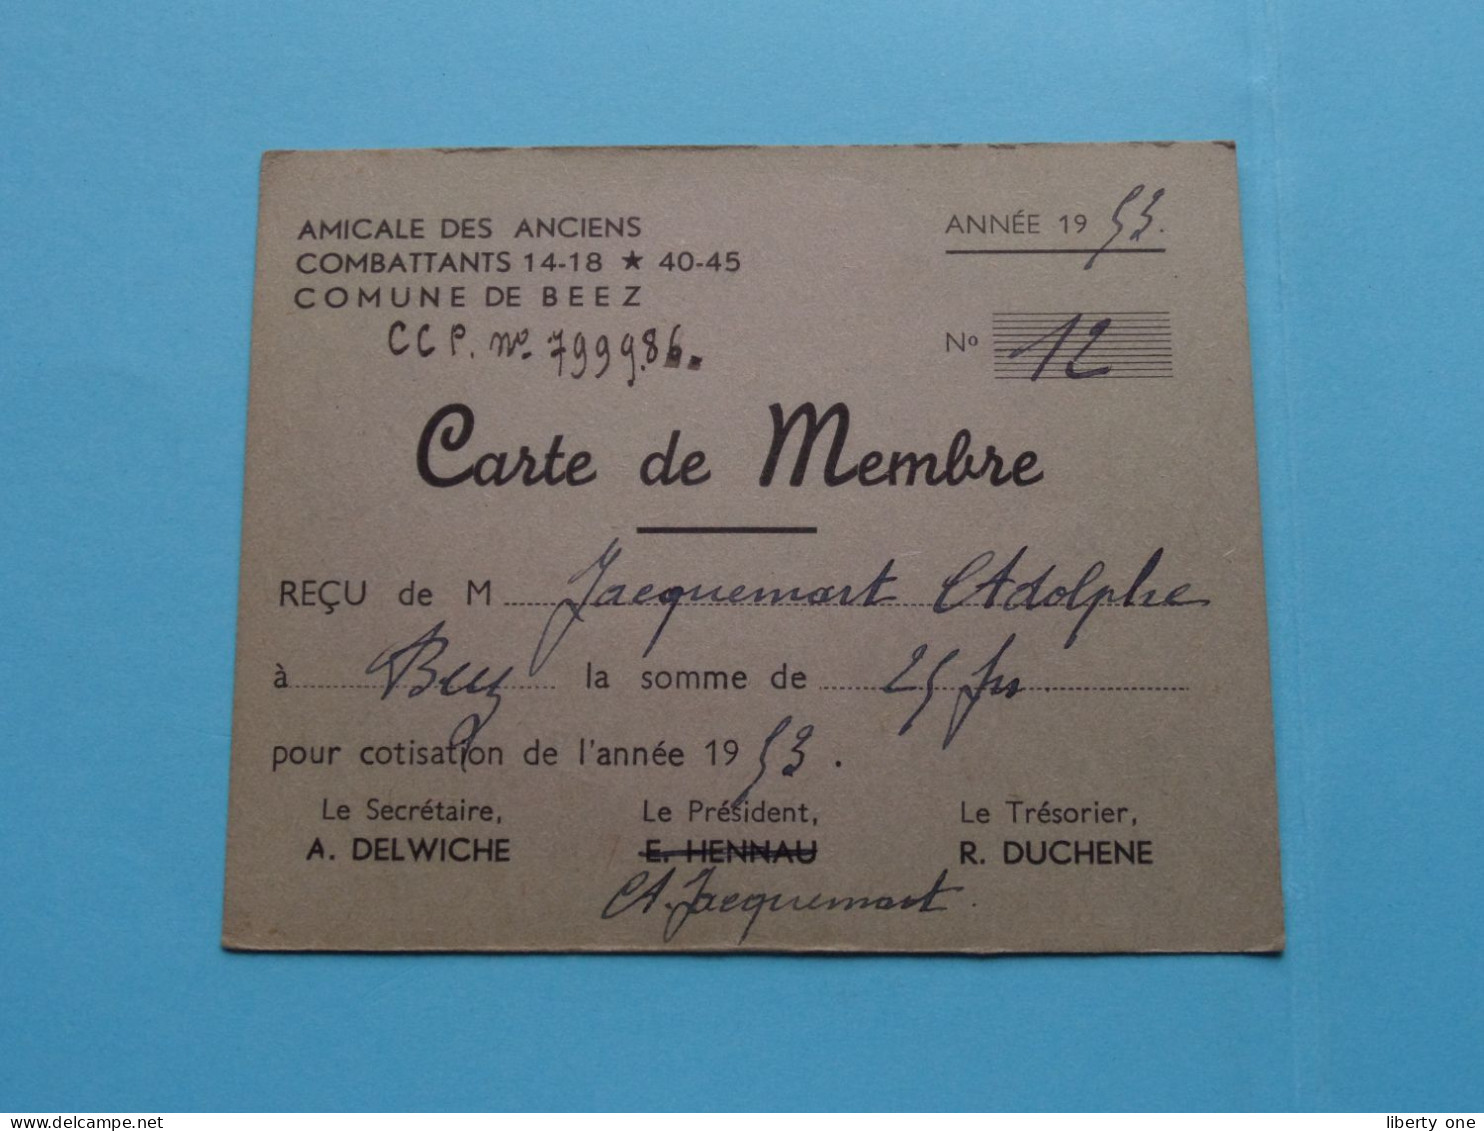 Am. Des Anciens COMBATTANTS 14-18 * 45-45 Com. De BEEZ ( Zie / Voir Scans ) 1953 ( Carte De Membre ) ! - Tarjetas De Membresía